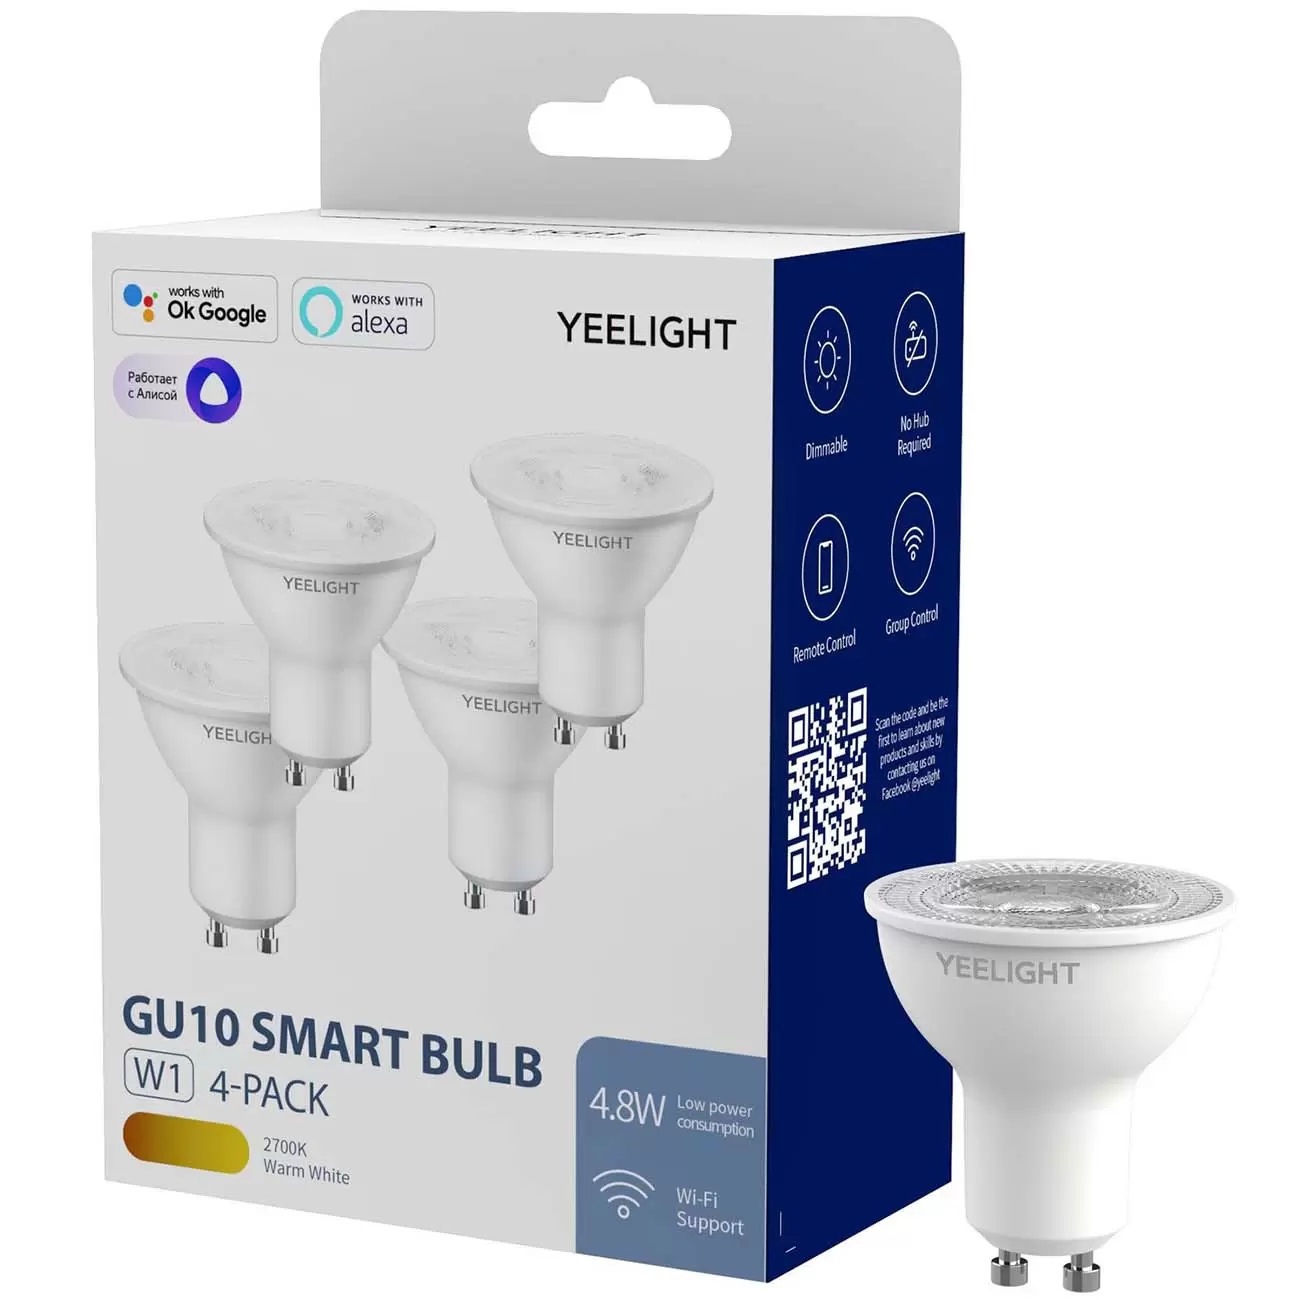 90475818 Лампа светодиодная GU10 Smart Bulb W1 GU10 220 В 4.50 Вт гриб 350 Лм теплый белый свет STLM-0242979 YEELIGHT